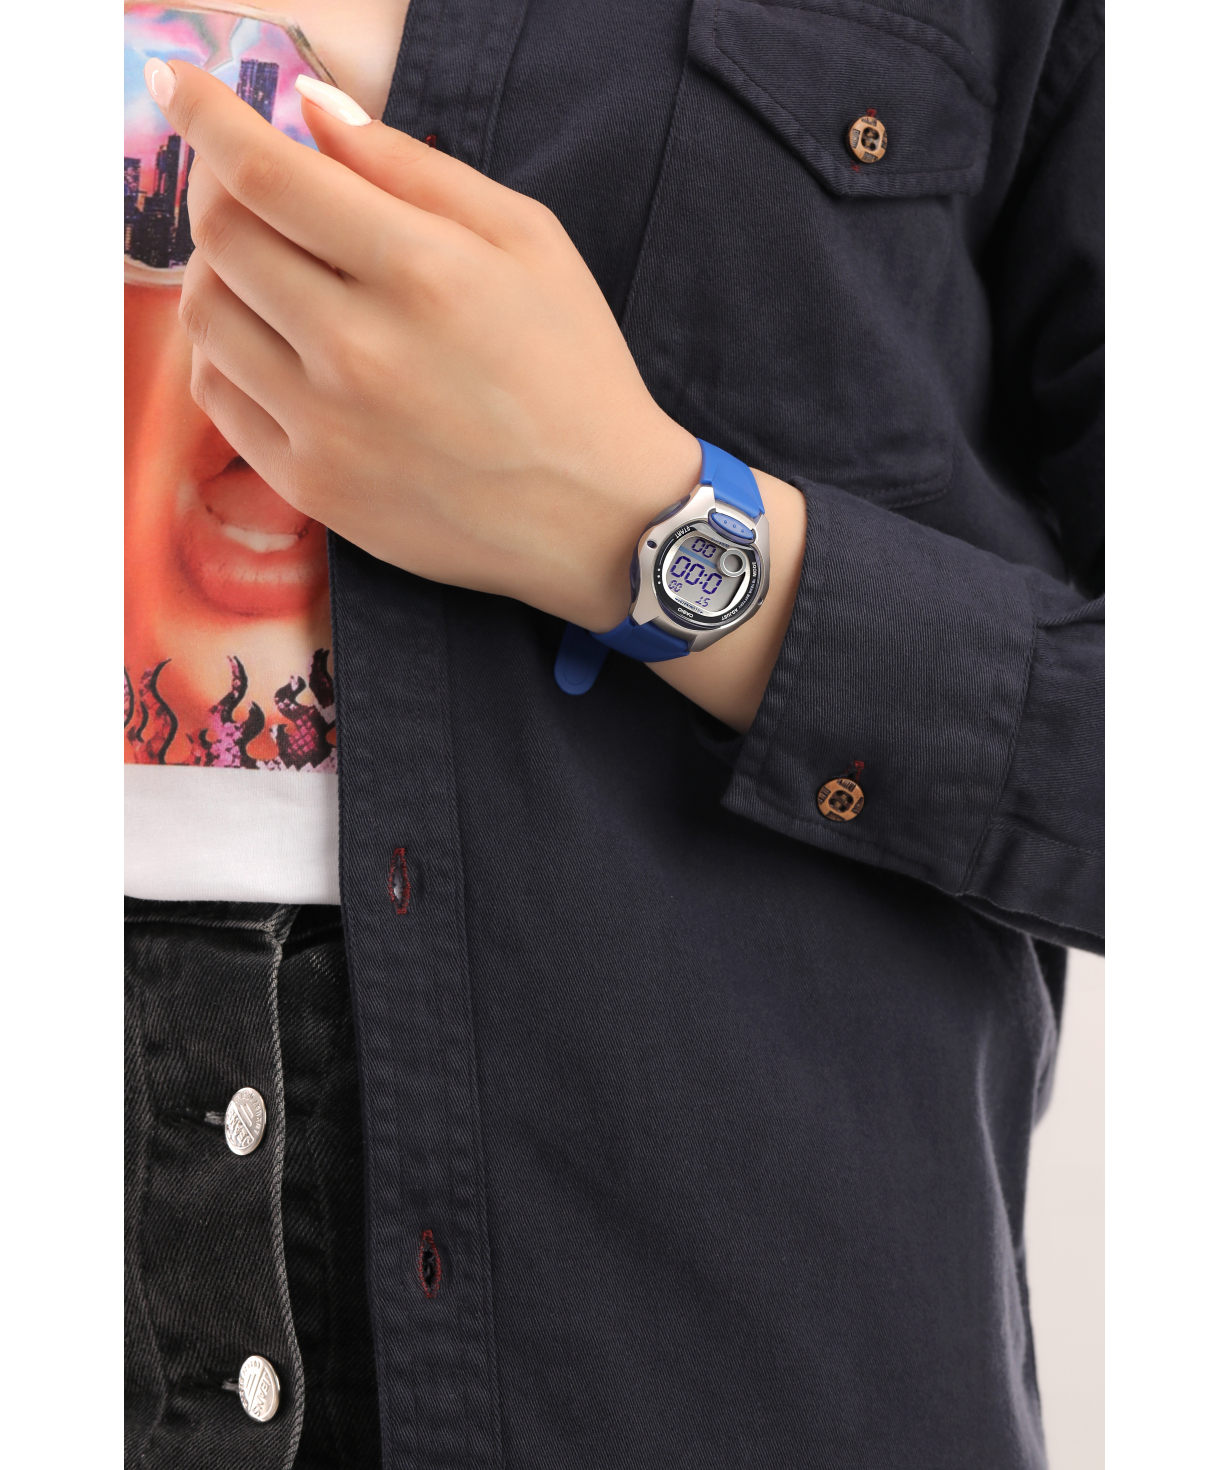 Ժամացույց  «Casio» ձեռքի  LW-200-2AVDF